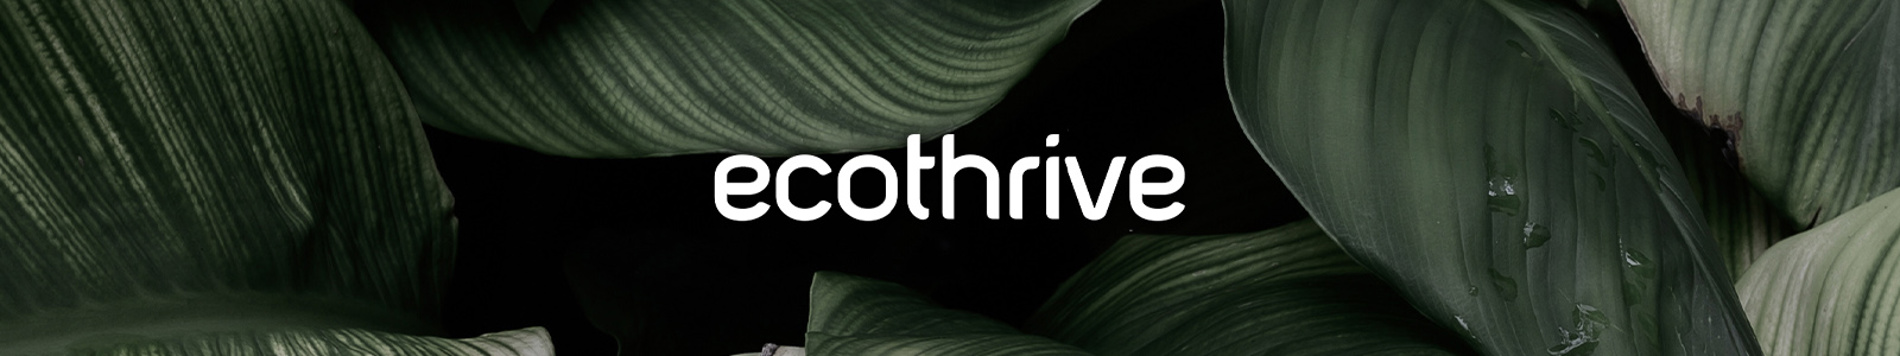 Ecothrive Additives